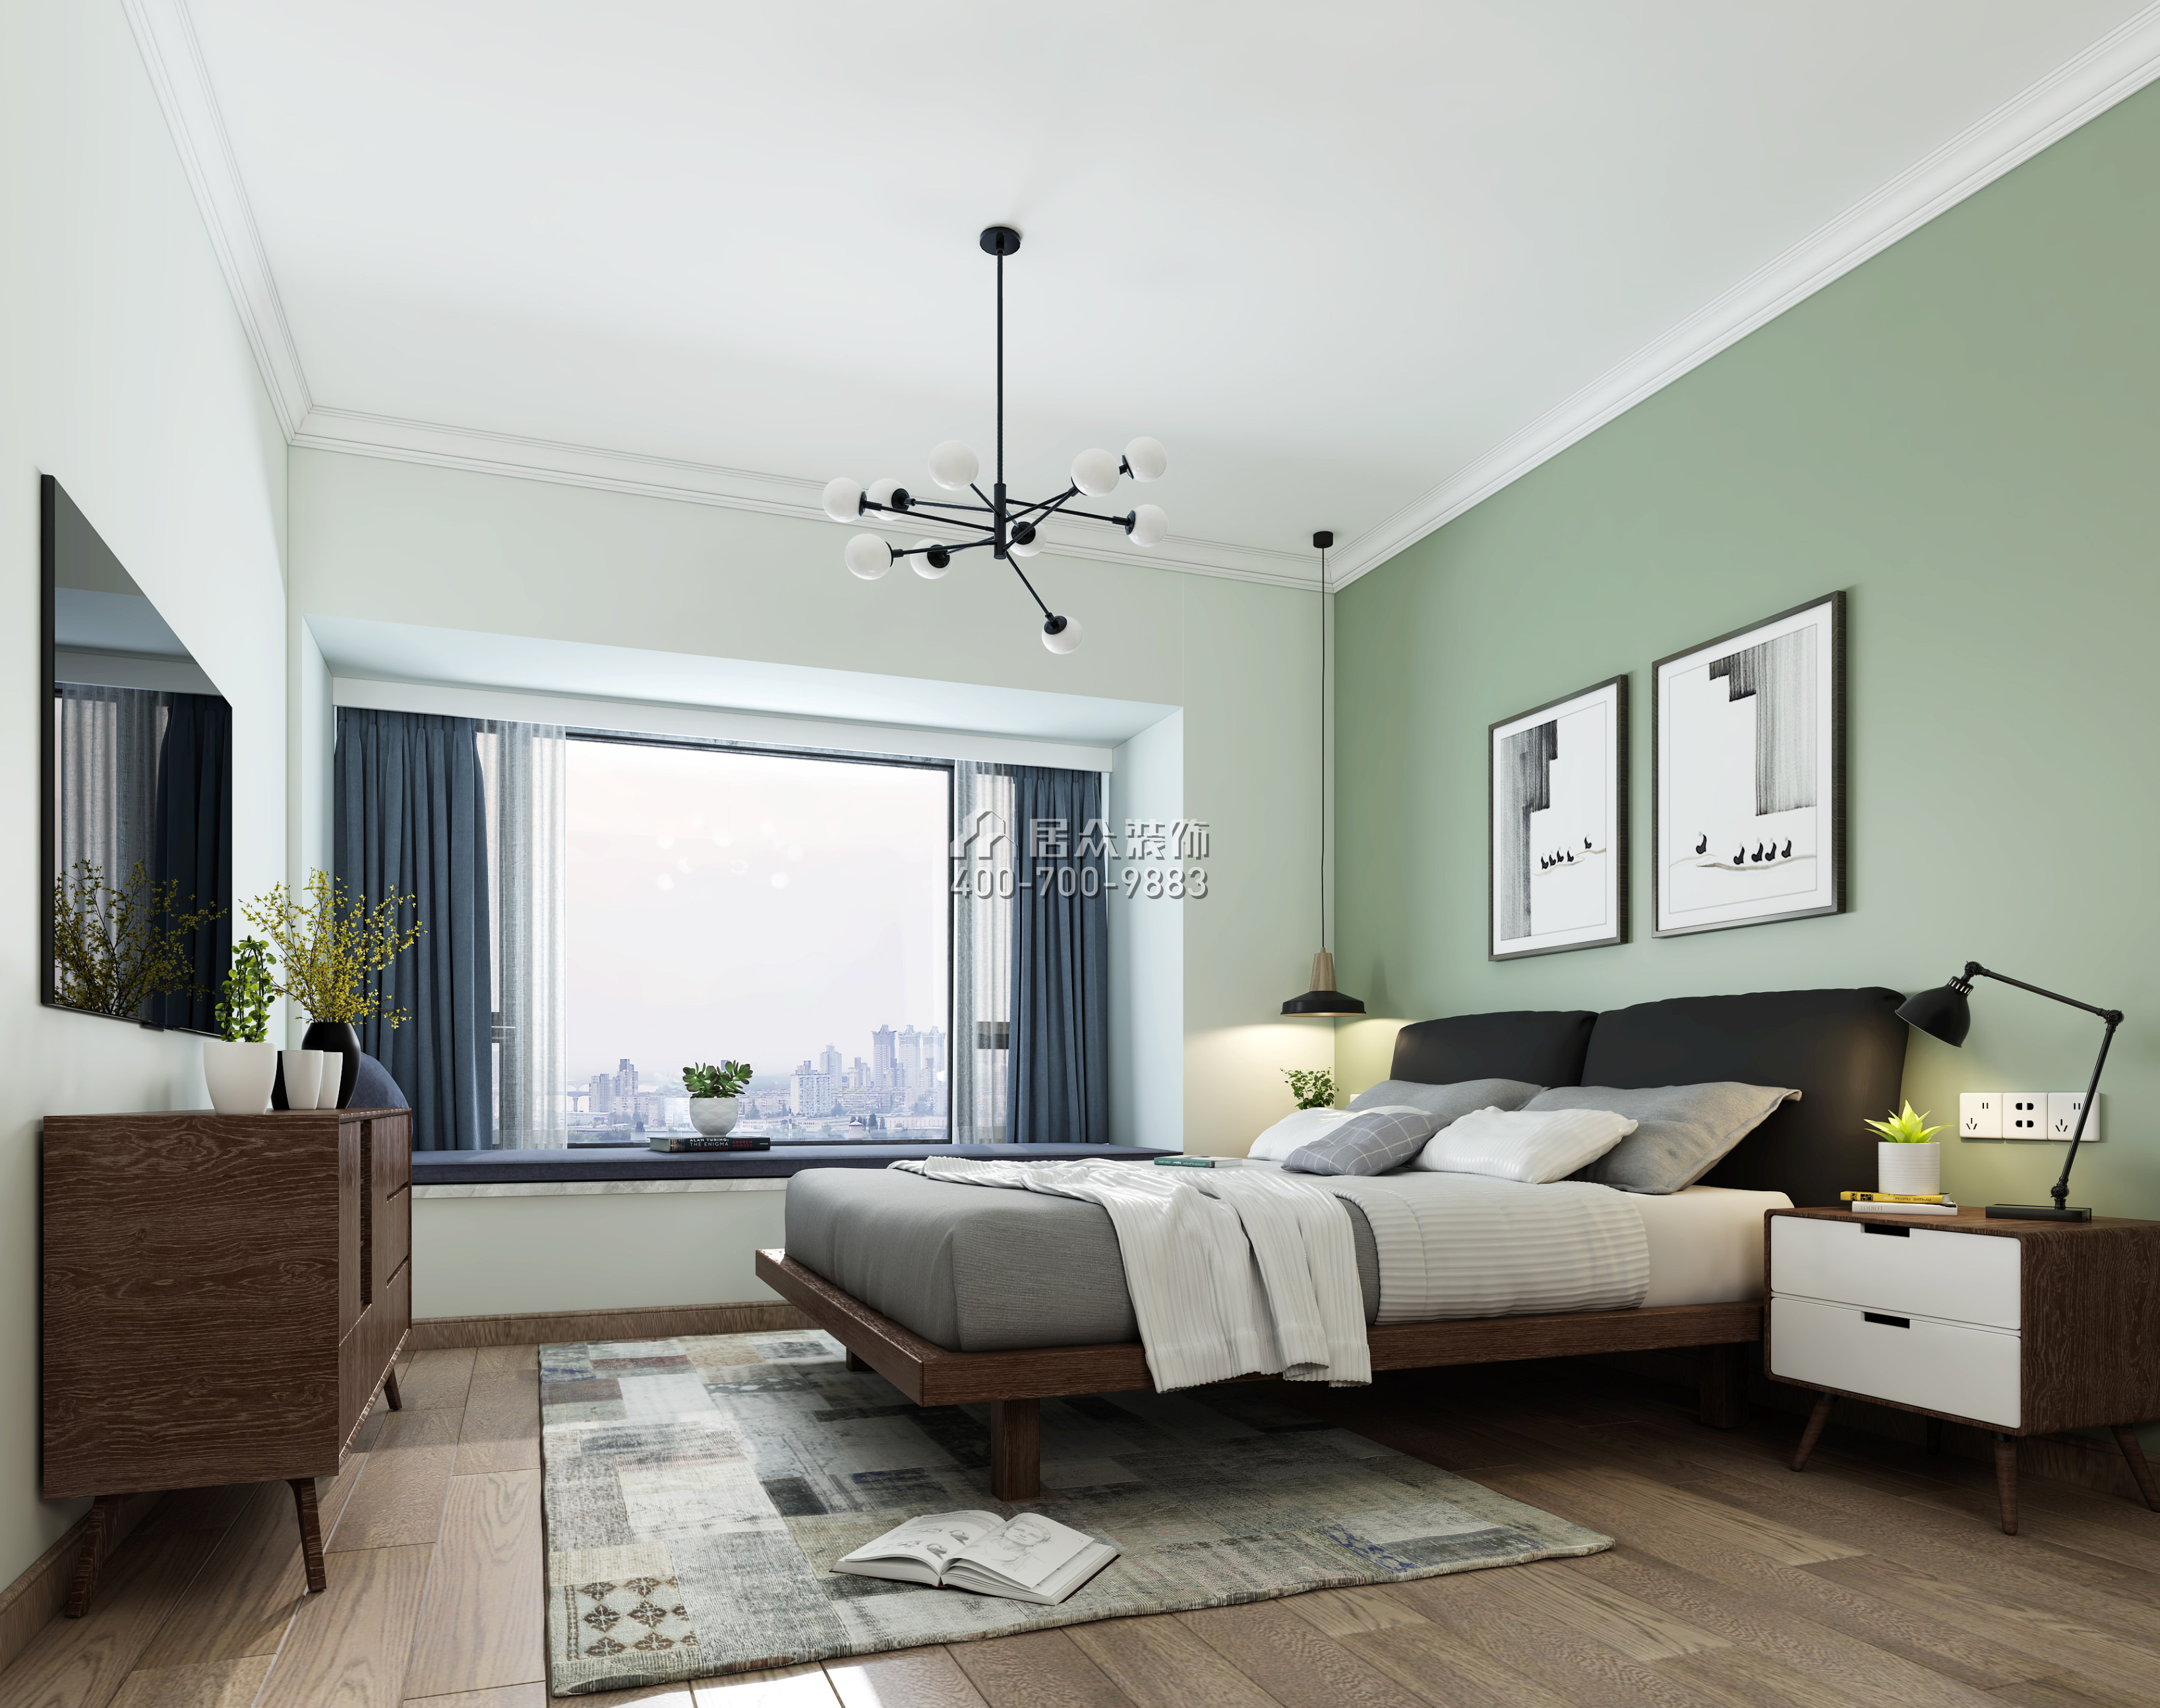 鳳凰蘭亭三期120平方米現代簡約風格平層戶型臥室裝修效果圖